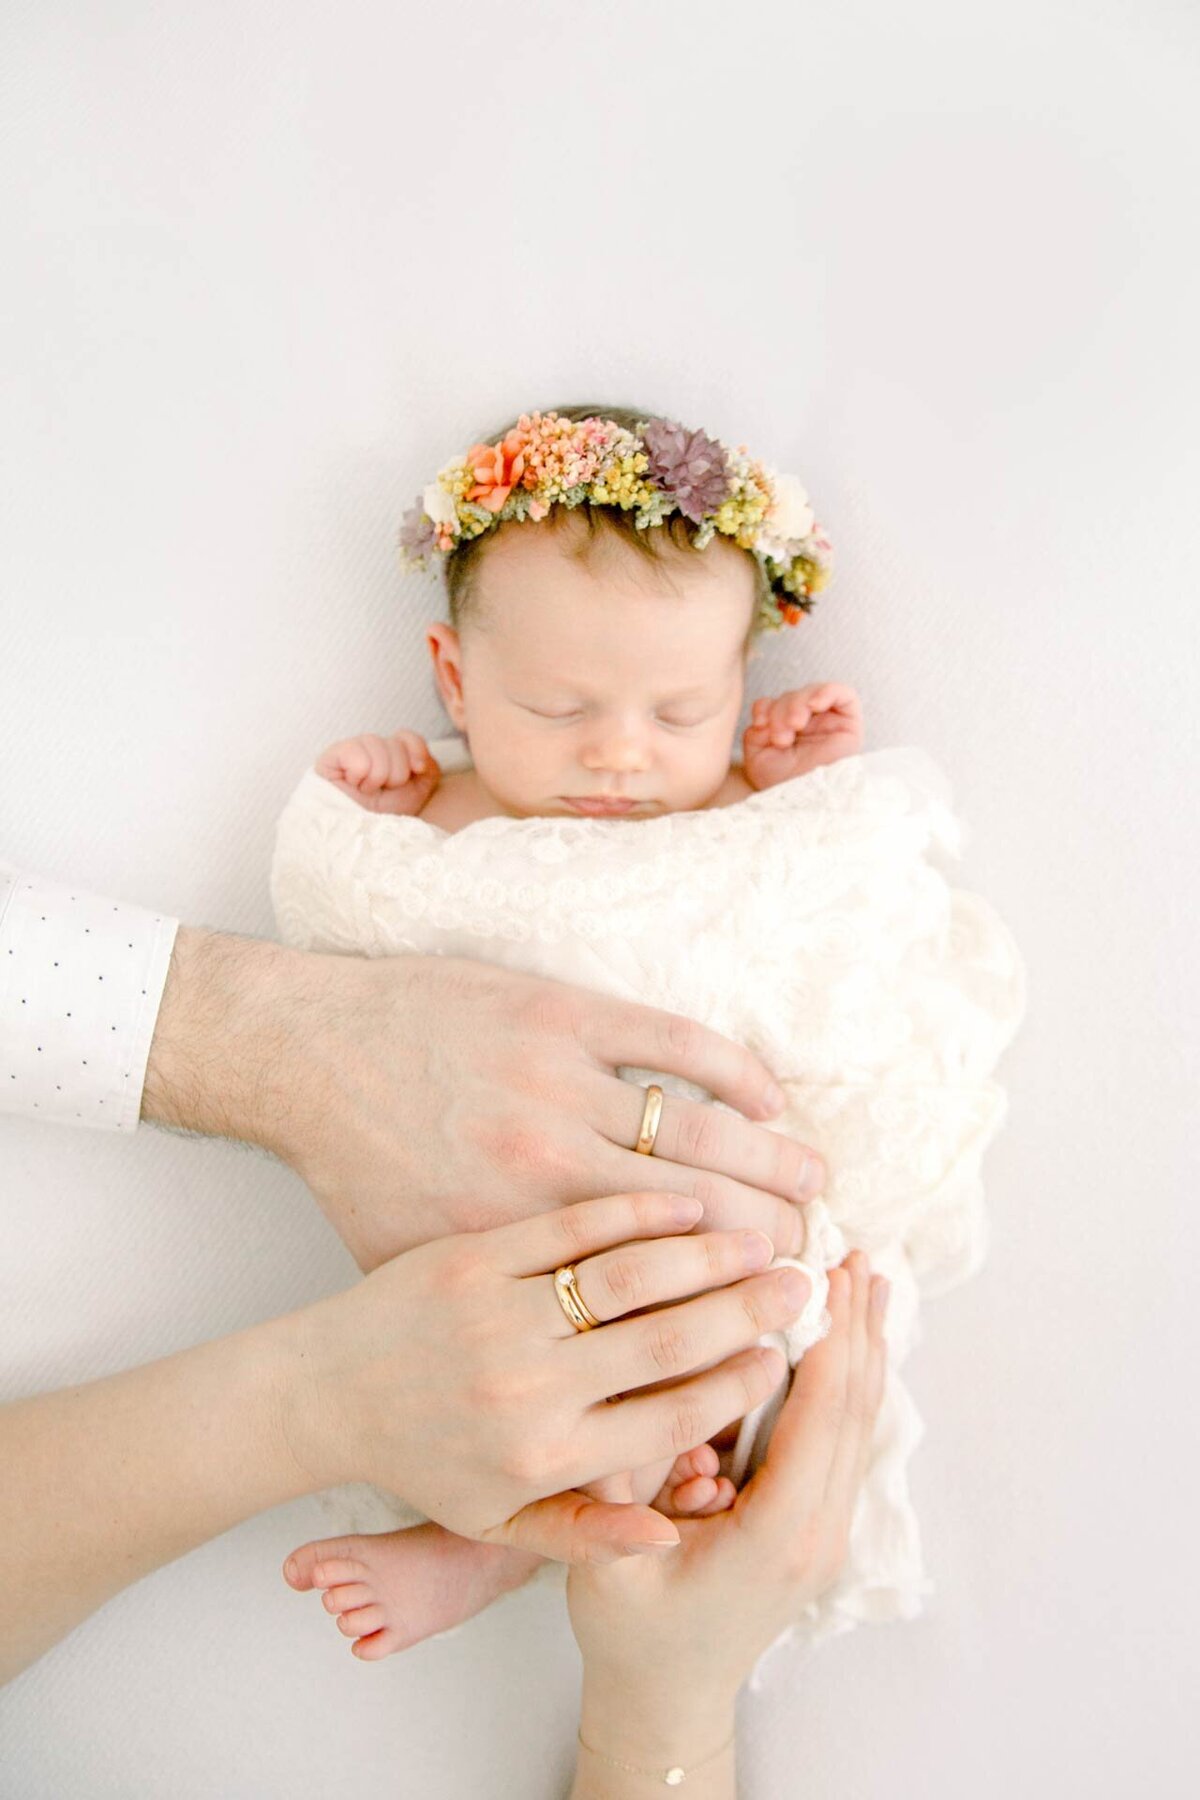 Newborn Fotoshooting mit schlafendem Neugeborenem mit buntem Blumenkranz und auferlegten Händen der Eltern.